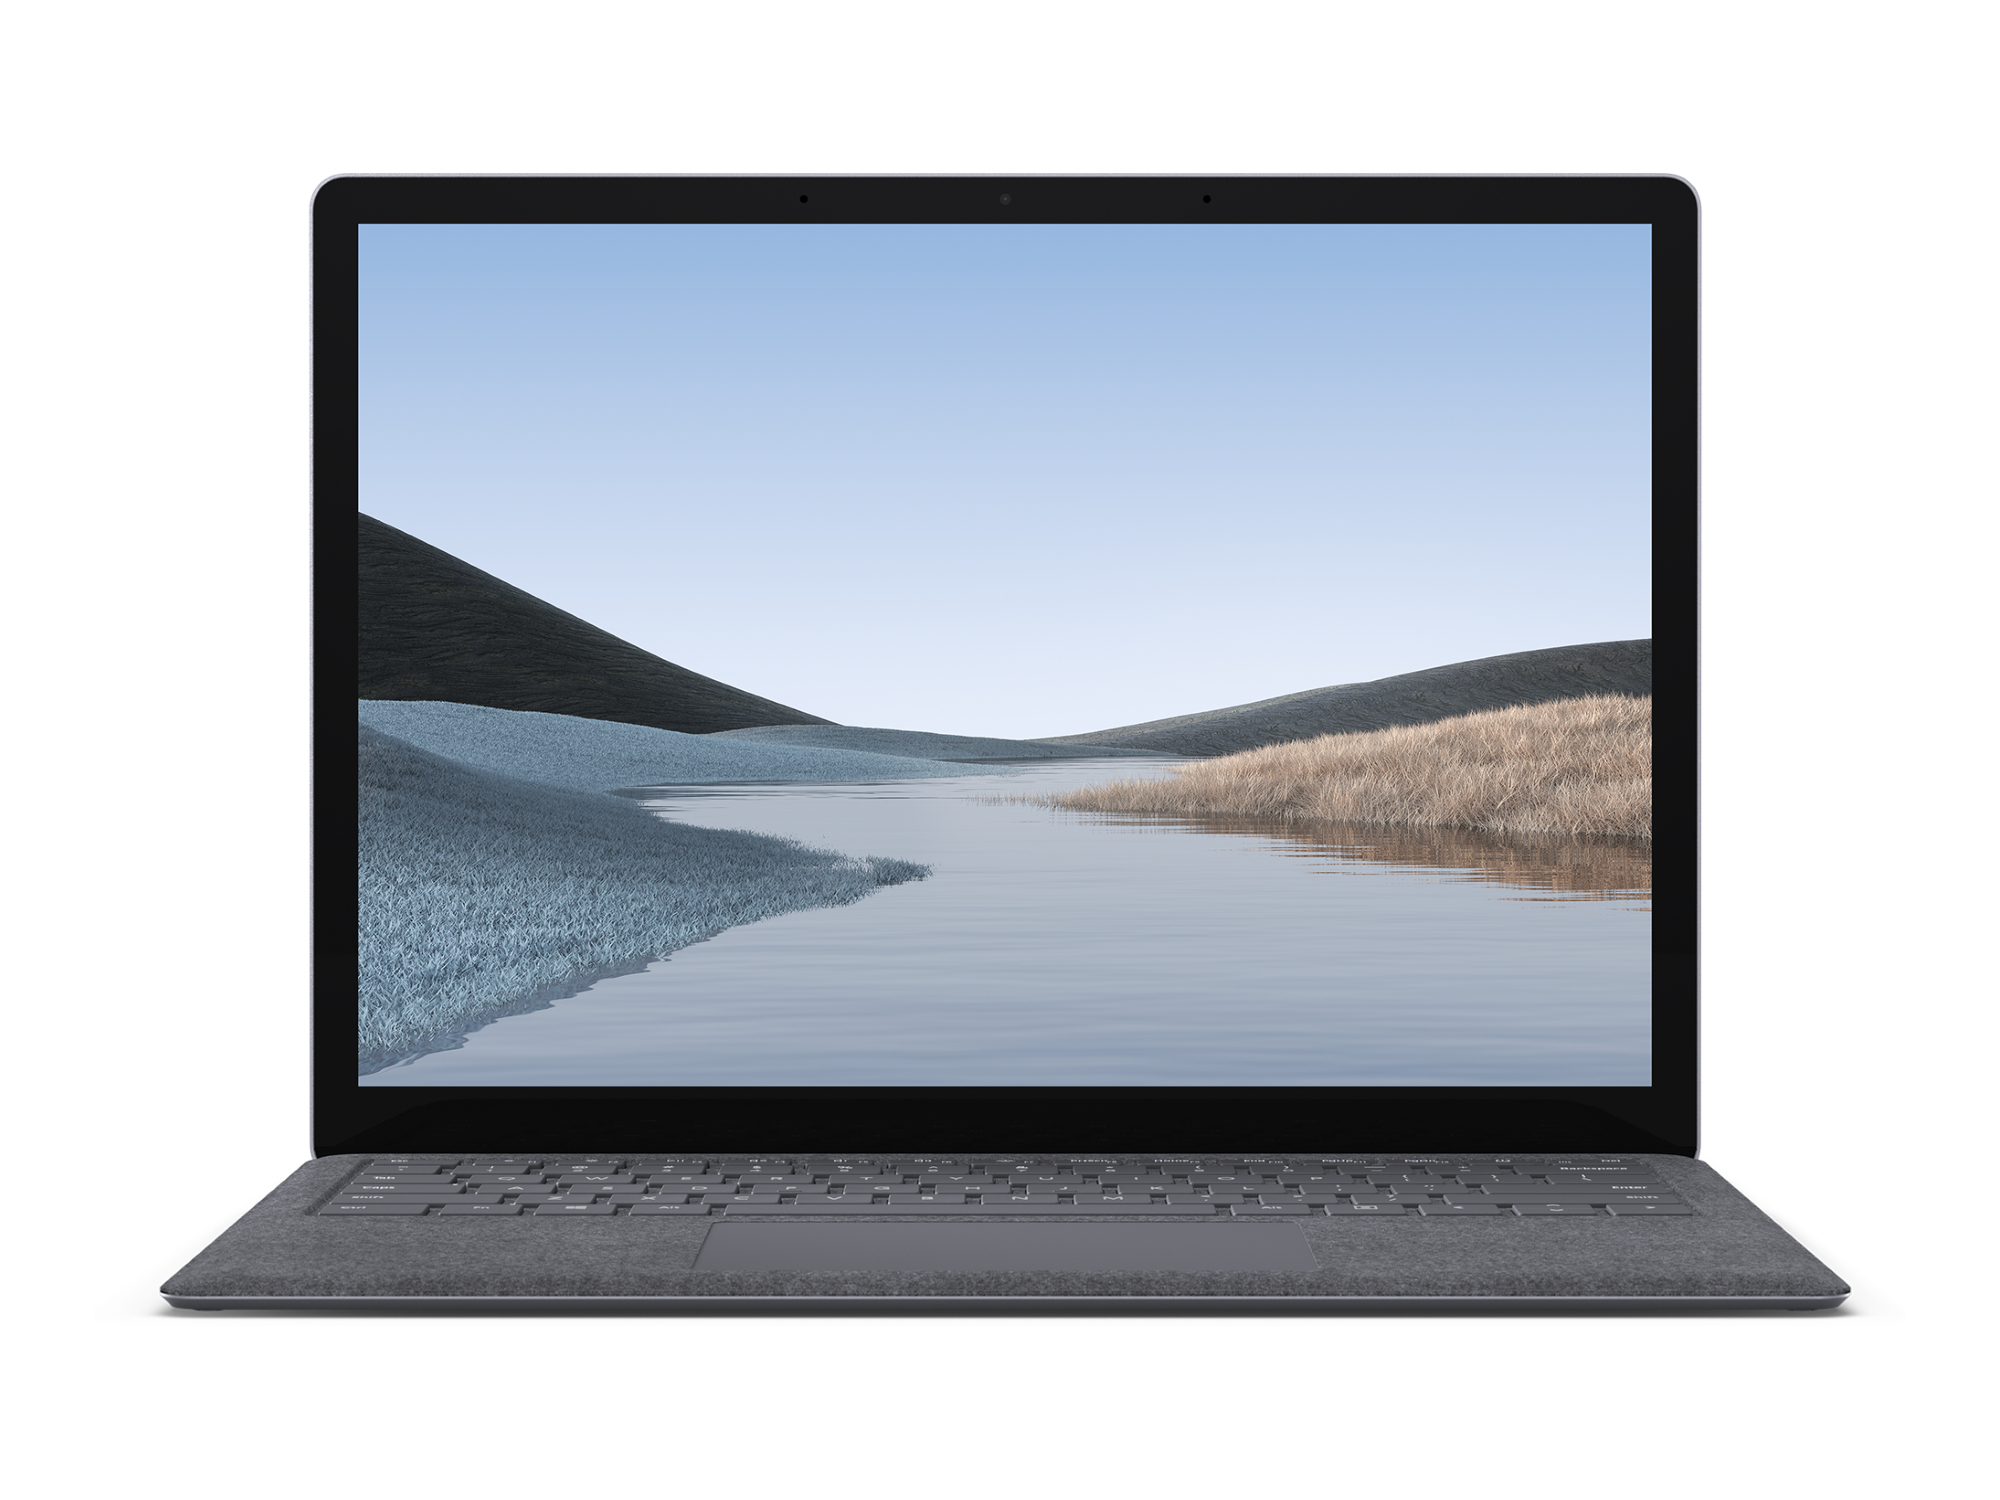 الكمبيوتر المحمول Microsoft Surface 3 بالمعالج i5-1035G7/ ذاكرة الوصول العشوائي 8 جيجابايت/محرك الأقراص الصلبة من النوع SSD سغة 128 جيجابايت/ شاشة قياس 13.5 بوصة من نوع Pixel Sense/ نظام التشغيلWindows 10/Platinum Fabric